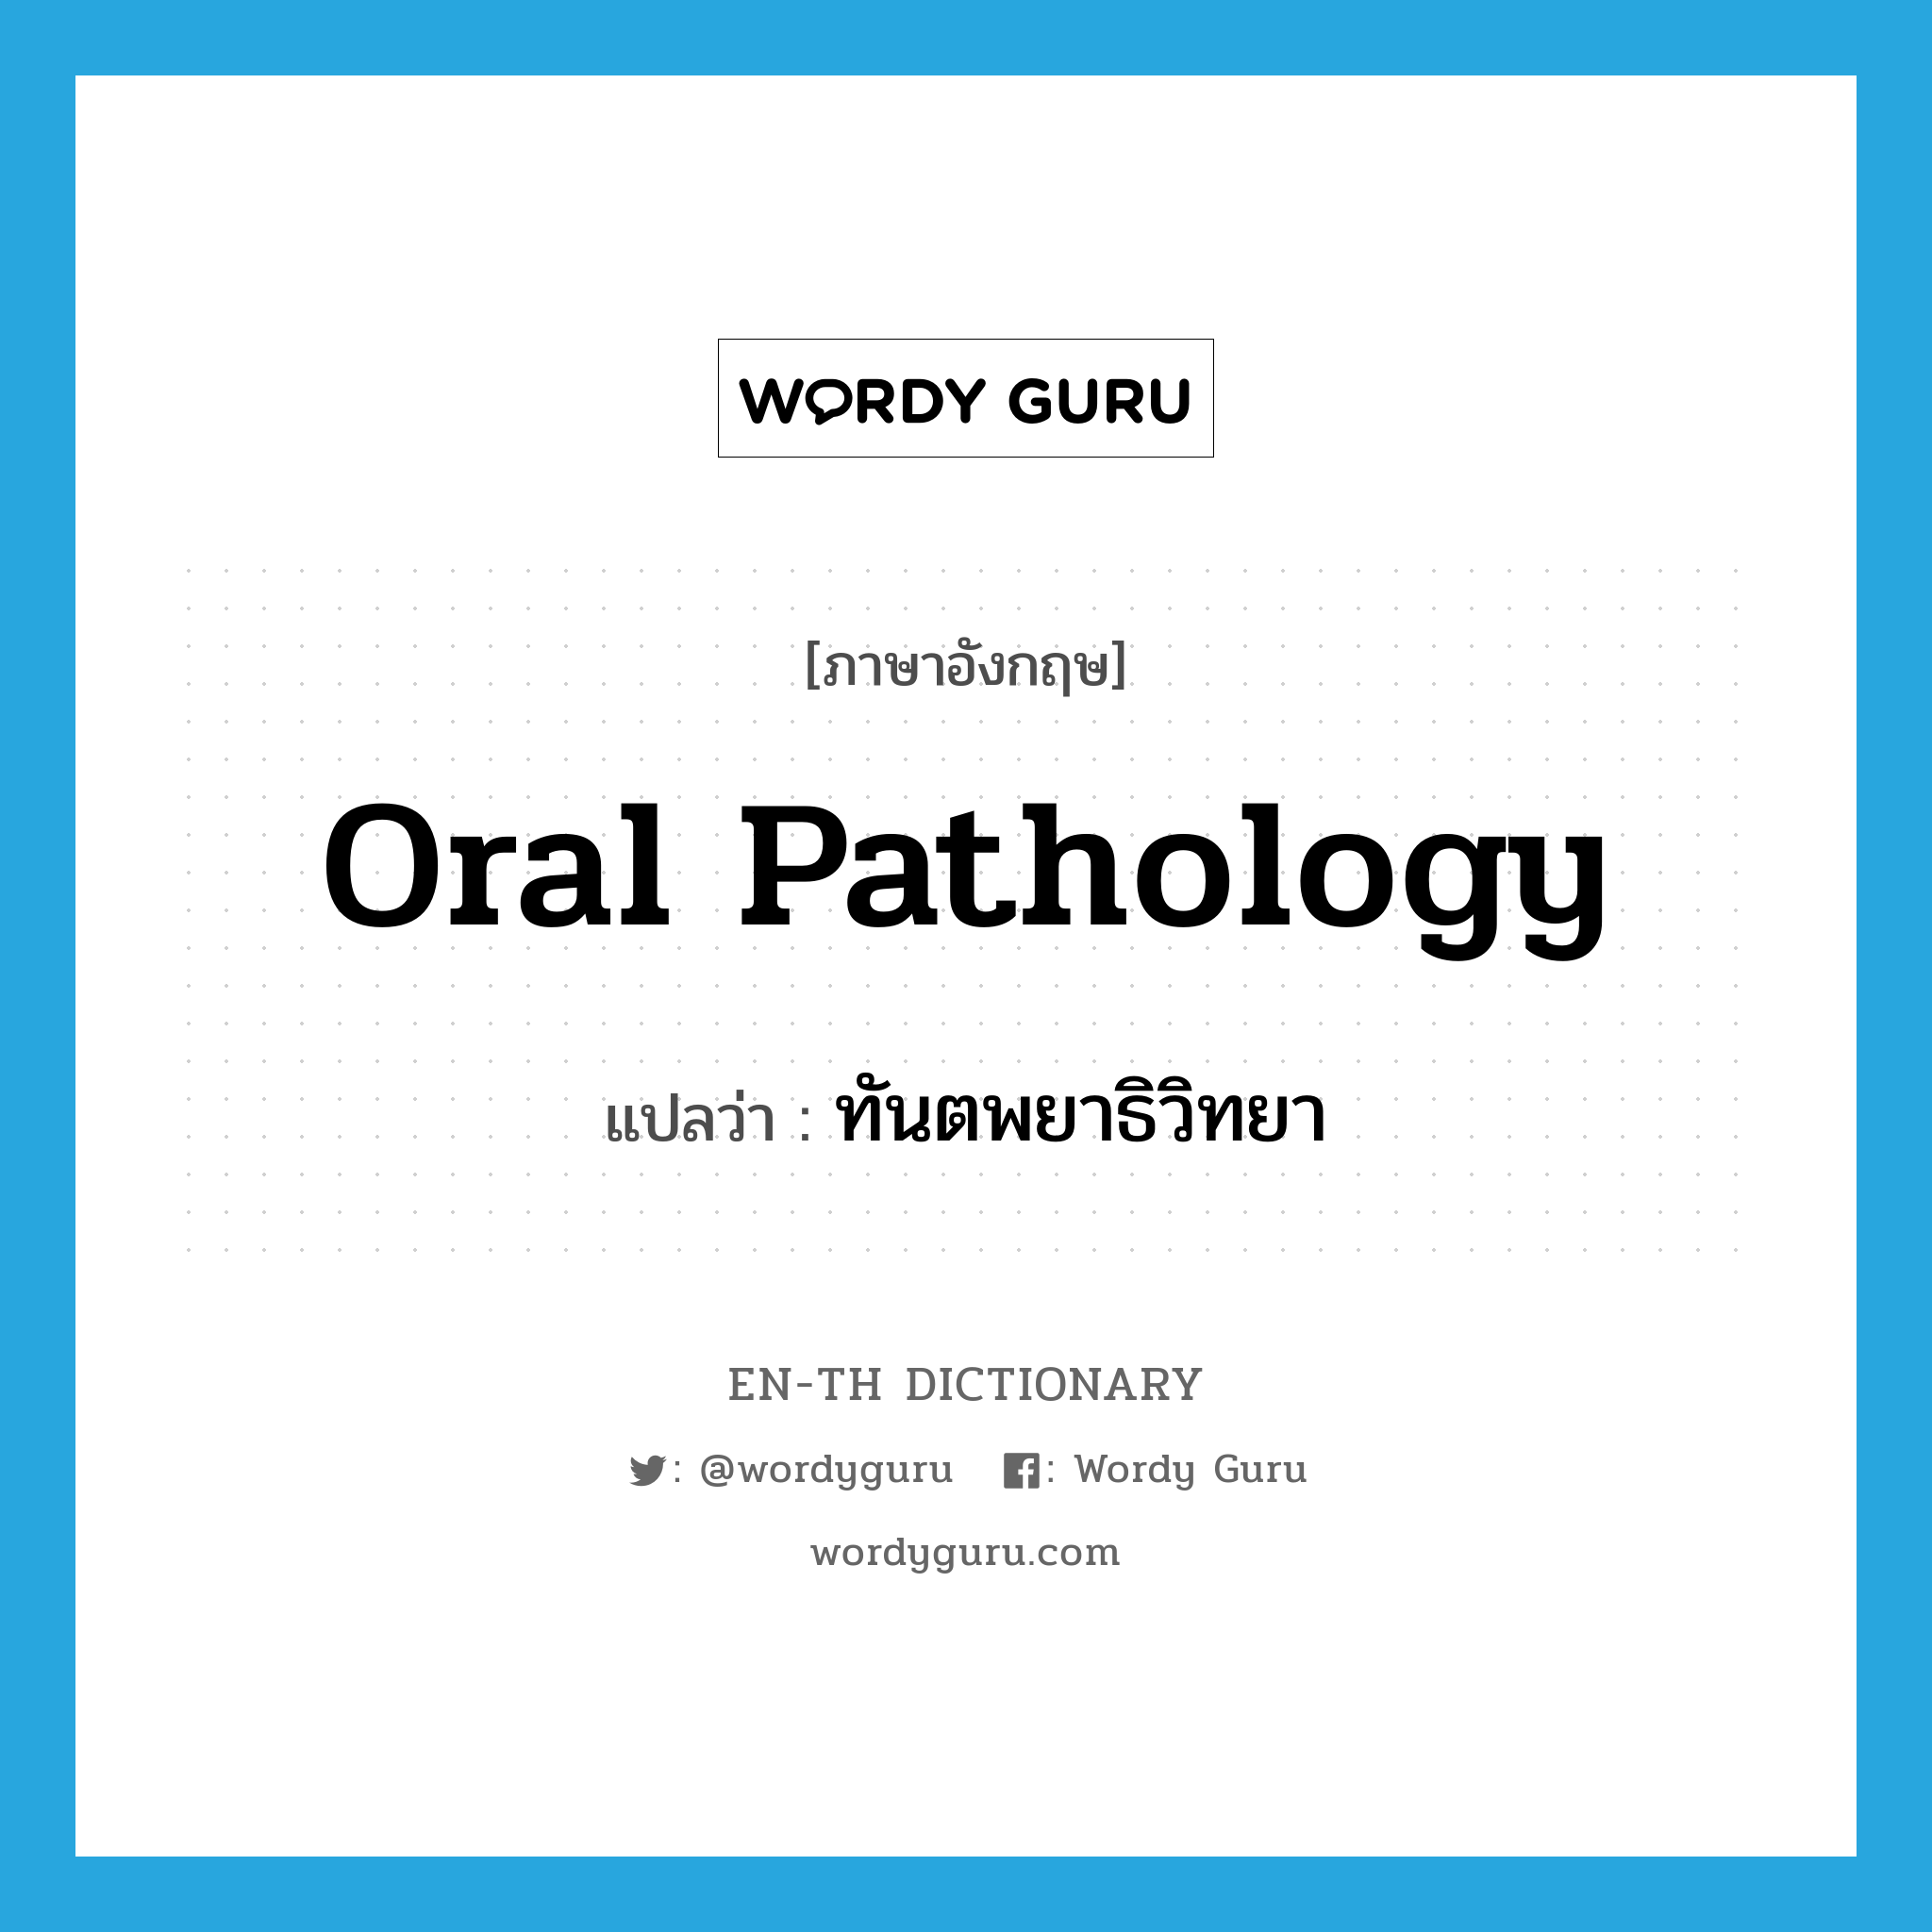 oral pathology แปลว่า?, คำศัพท์ภาษาอังกฤษ oral pathology แปลว่า ทันตพยาธิวิทยา ประเภท N หมวด N